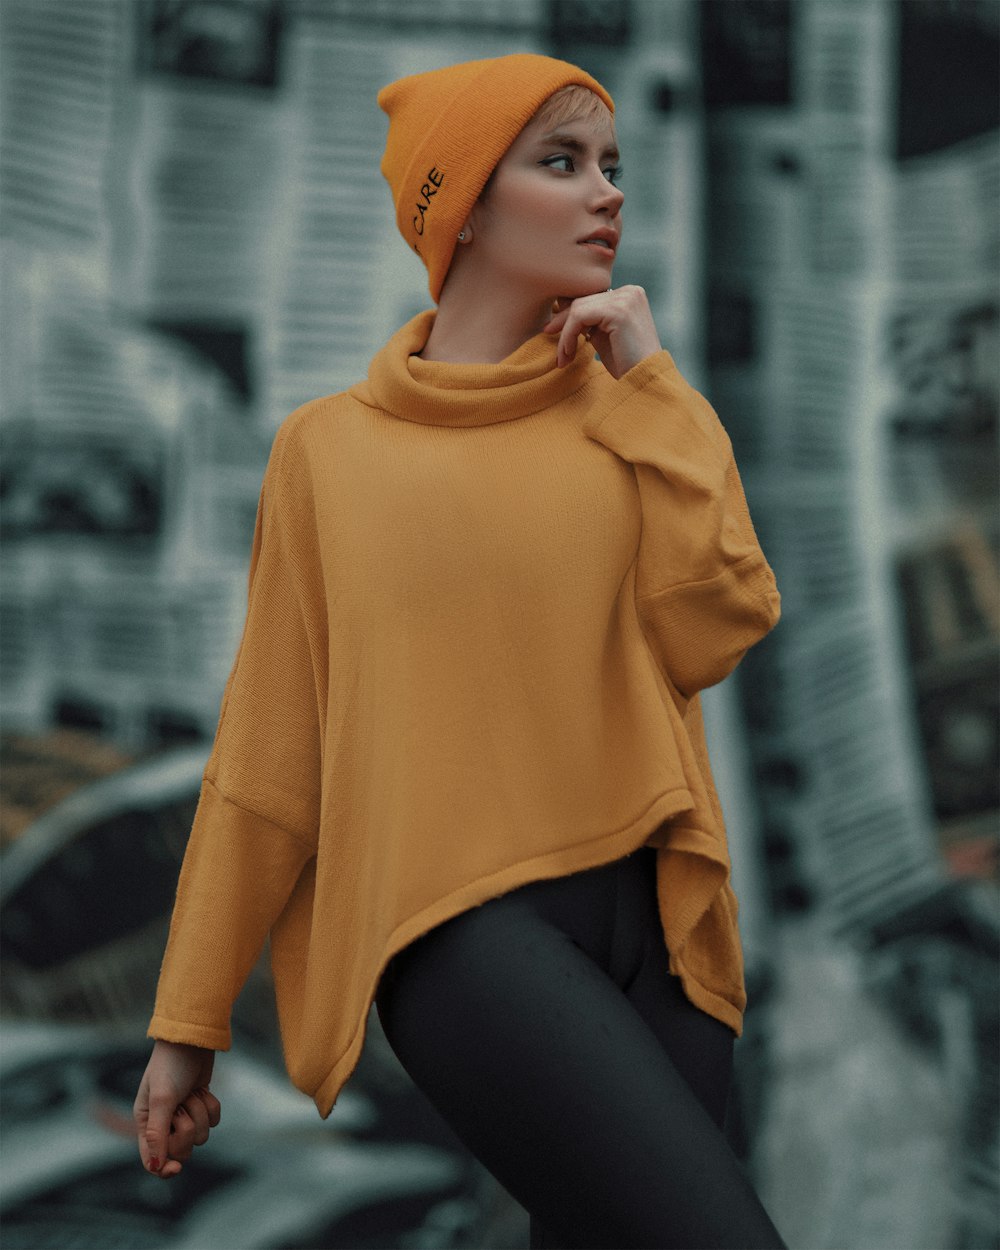 woman in yellow hijab and black leggings